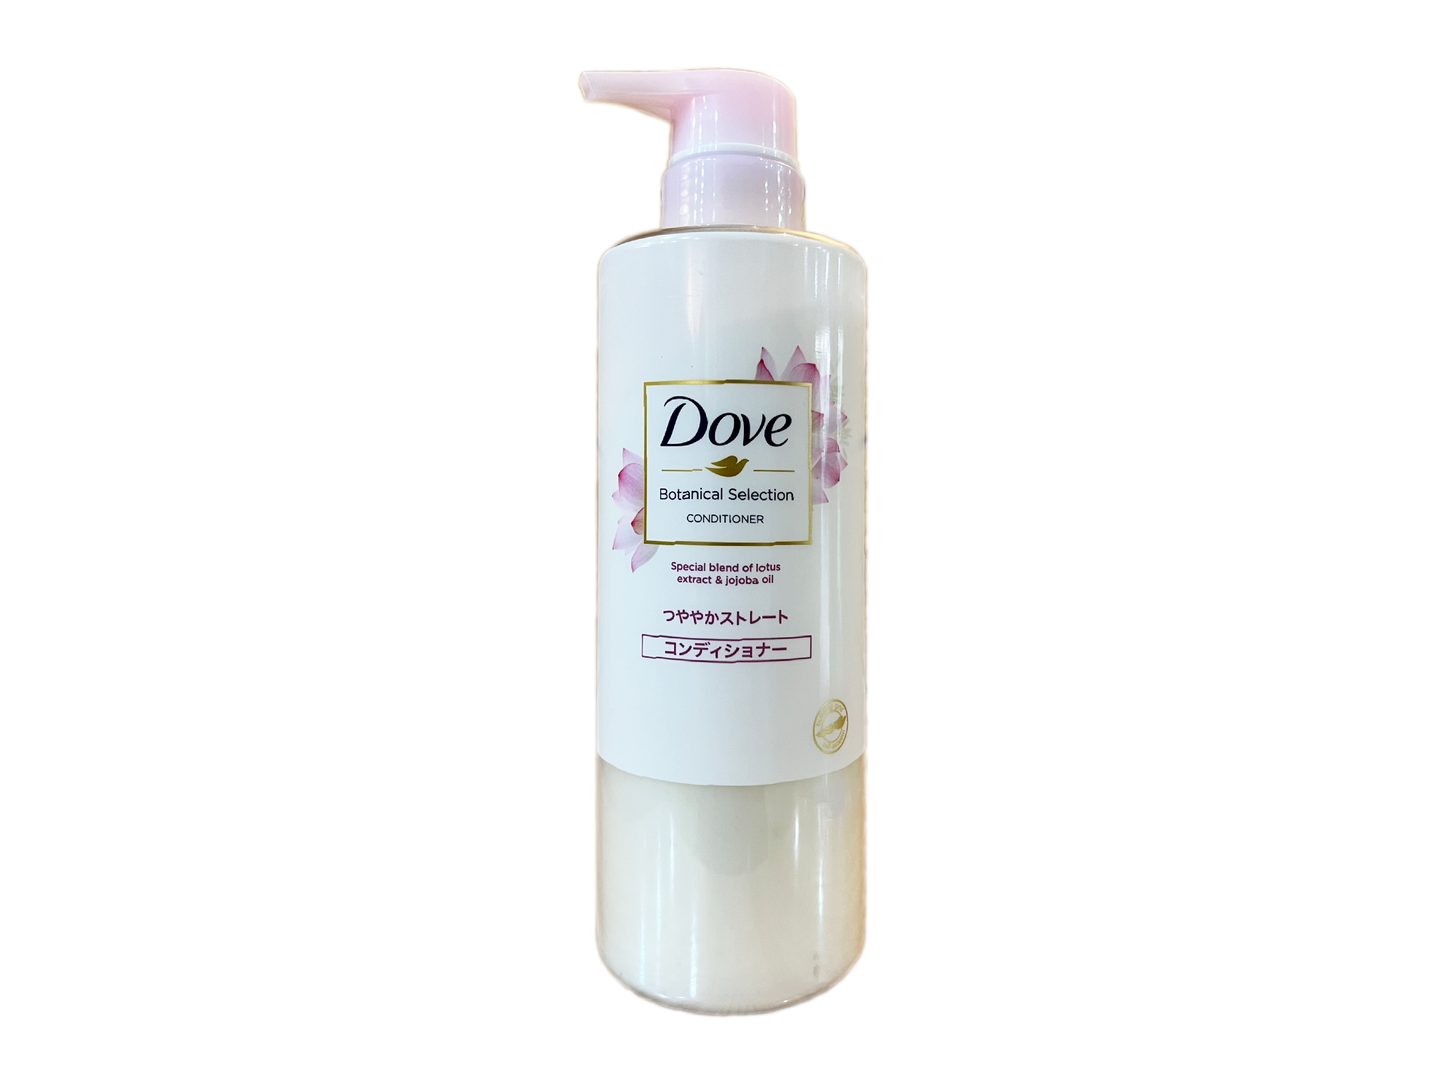 Dove, Lotus Extract & Jojoba Oil, Conditioner (500 g)